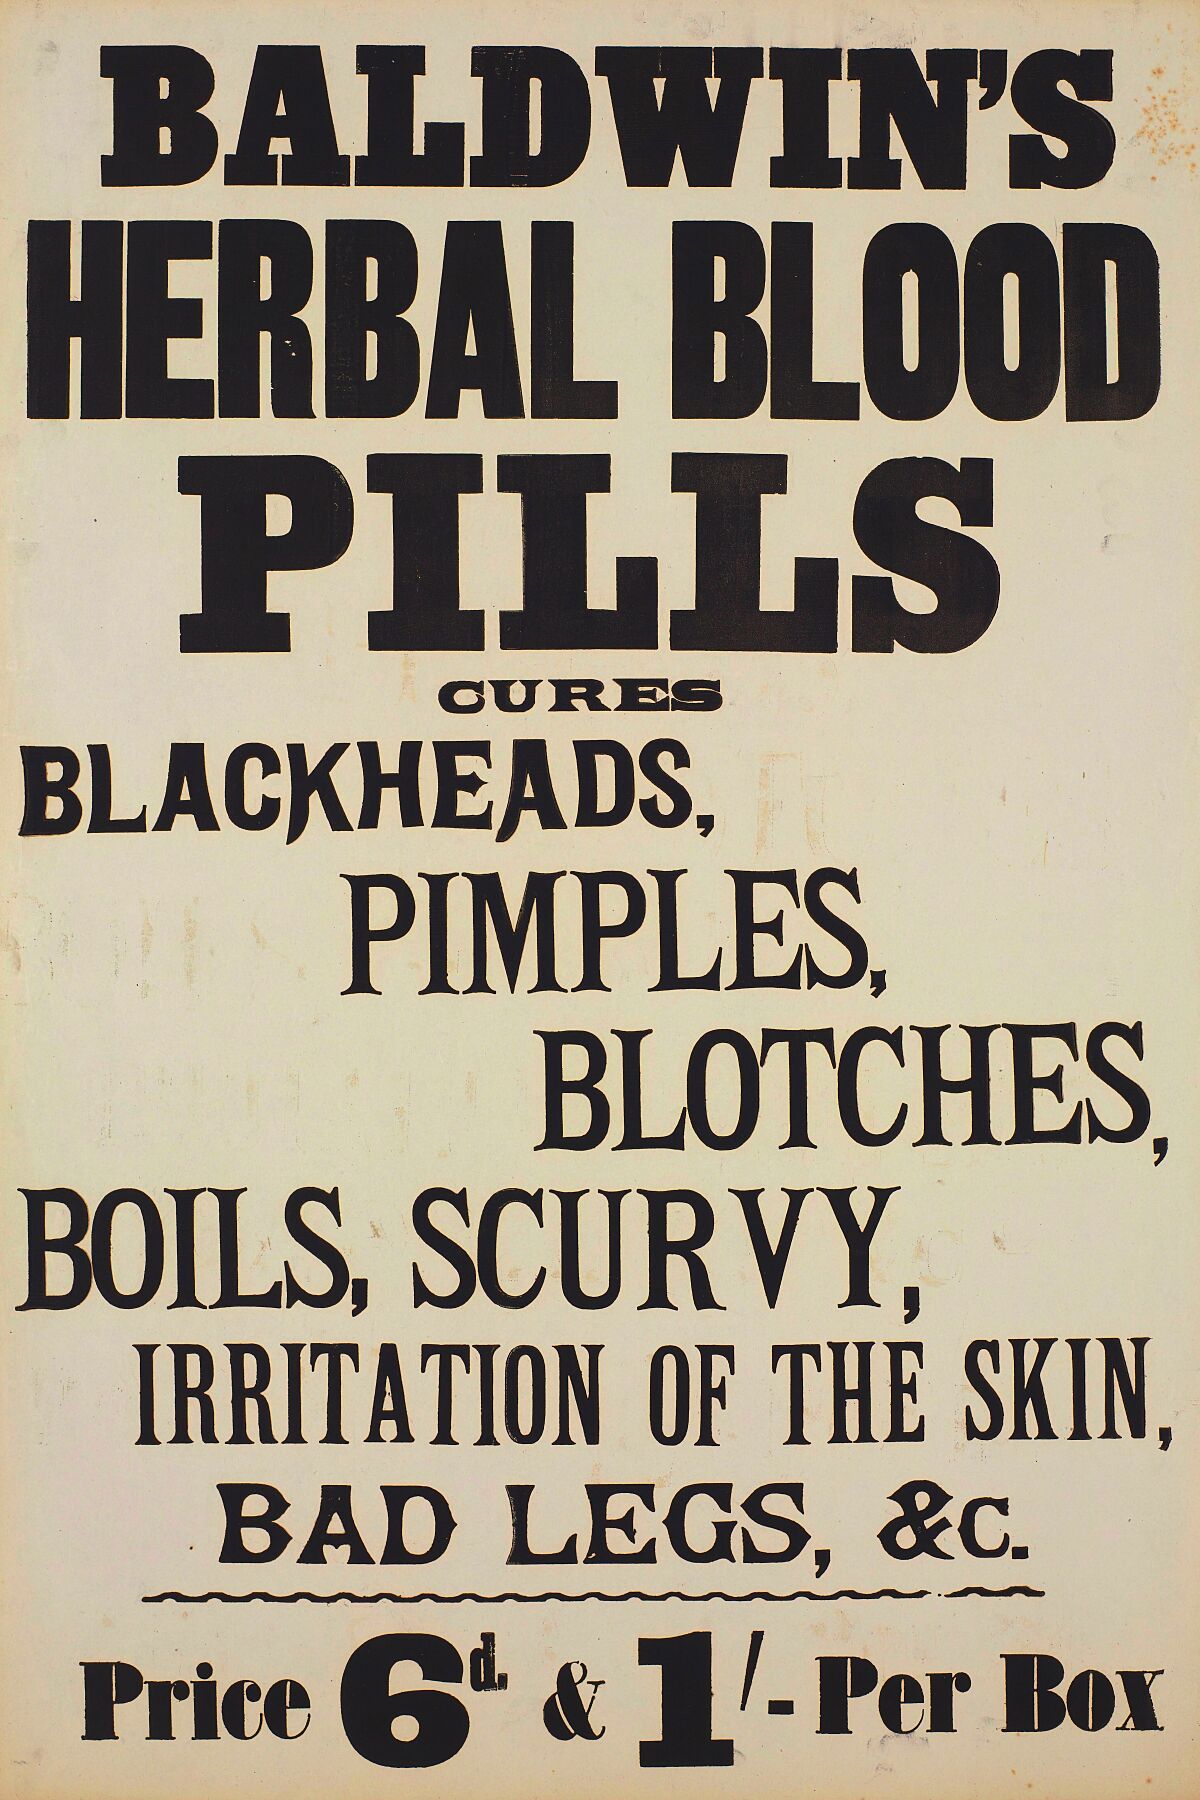 Píldoras de sangre de Baldwin c.1900